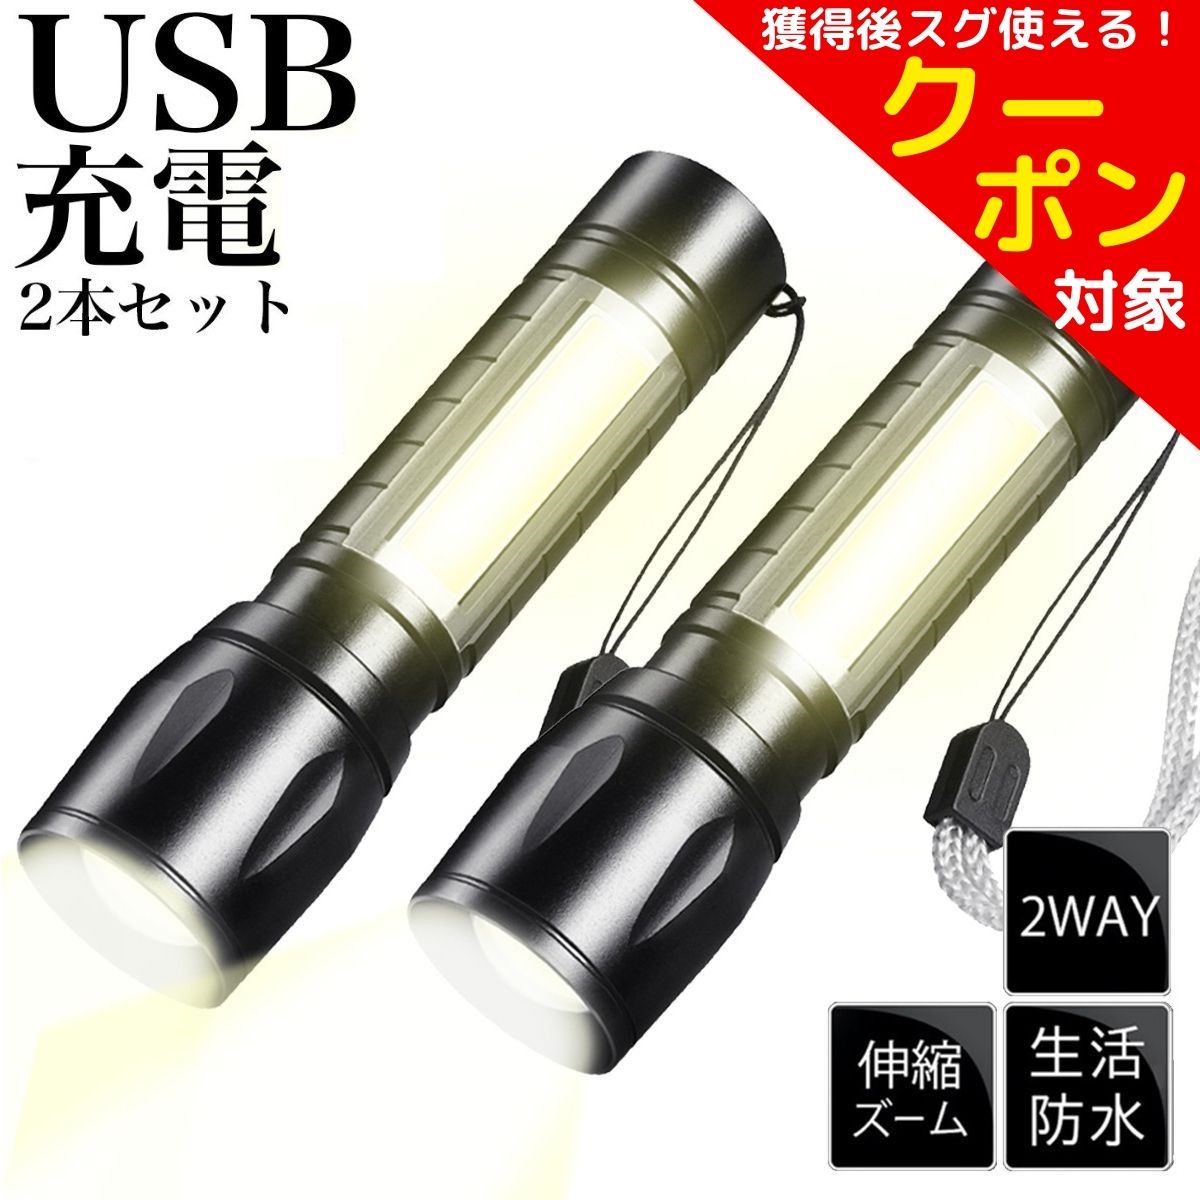 超歓迎された】 016 ハンディライト 2個 懐中電灯 LED 新品 充電式 USB 最強 軍用